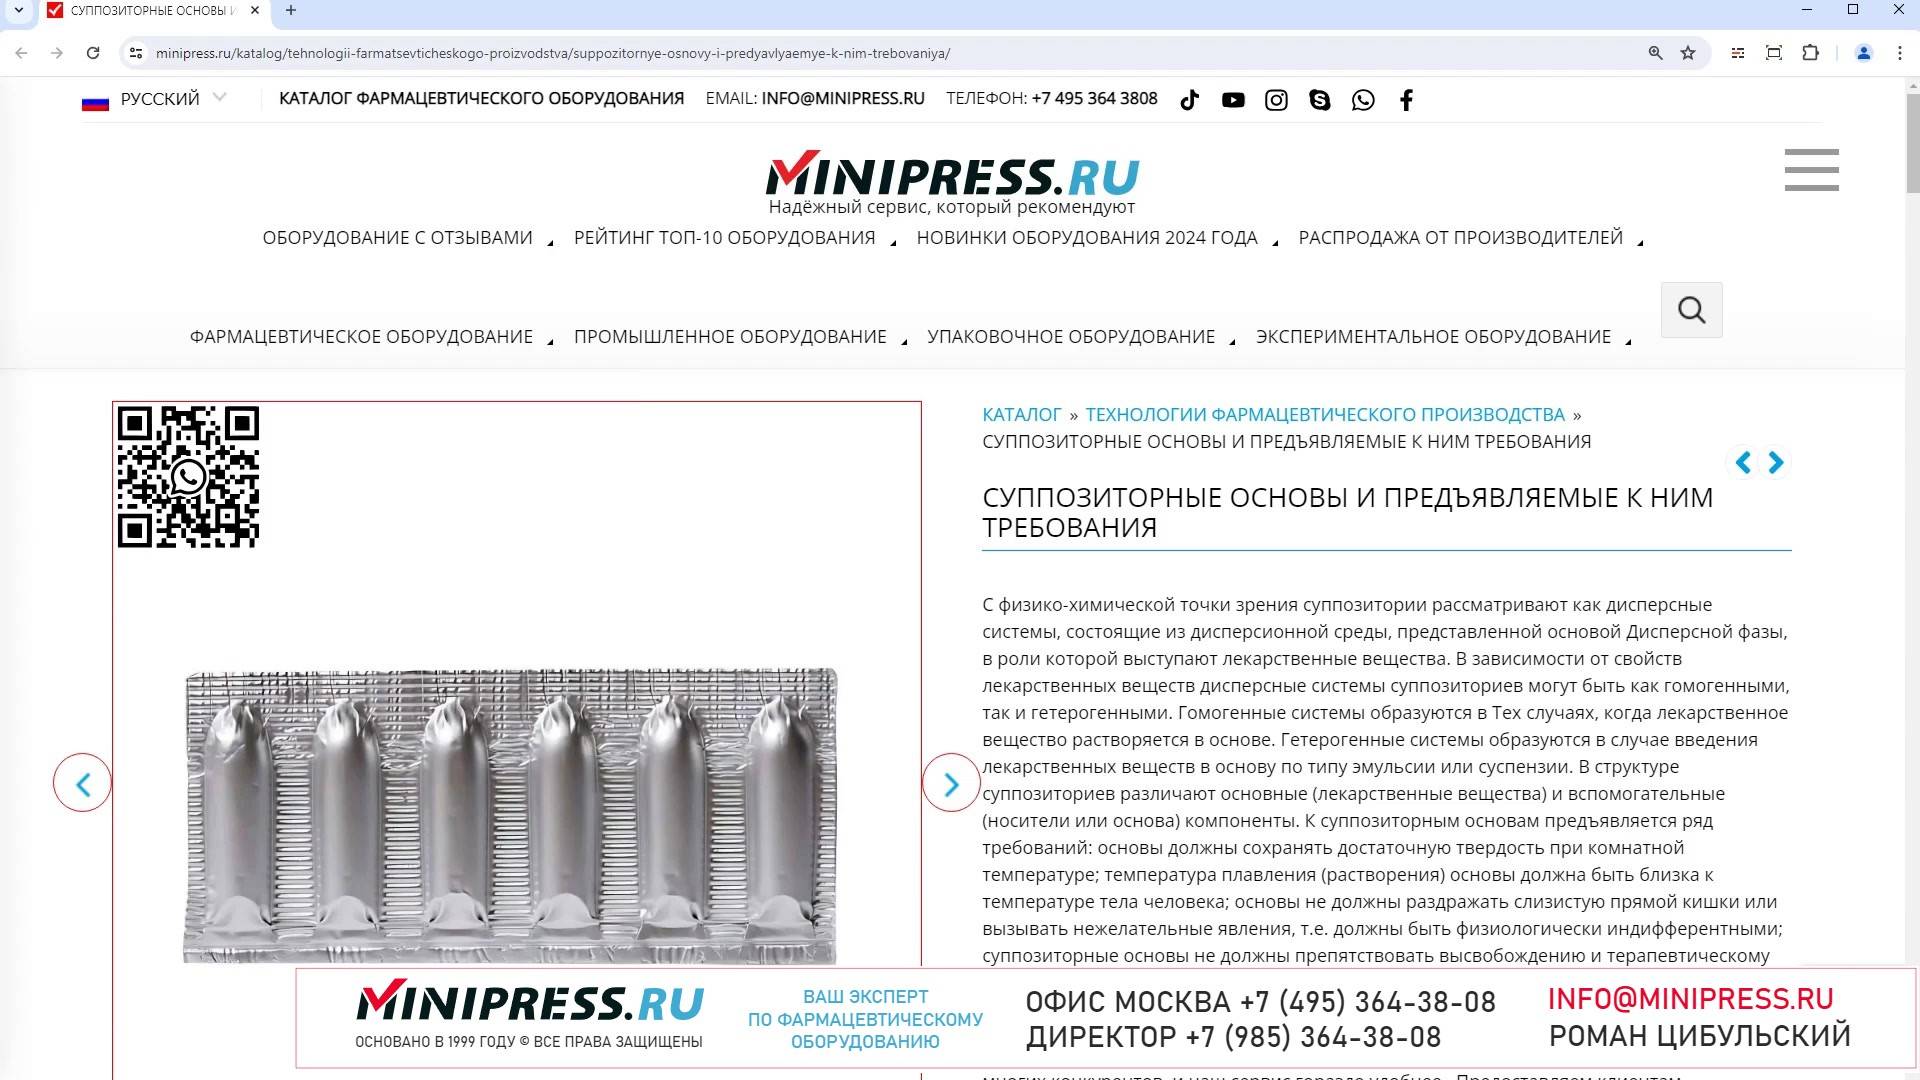 Minipress.ru Суппозиторные основы и предъявляемые к ним требования